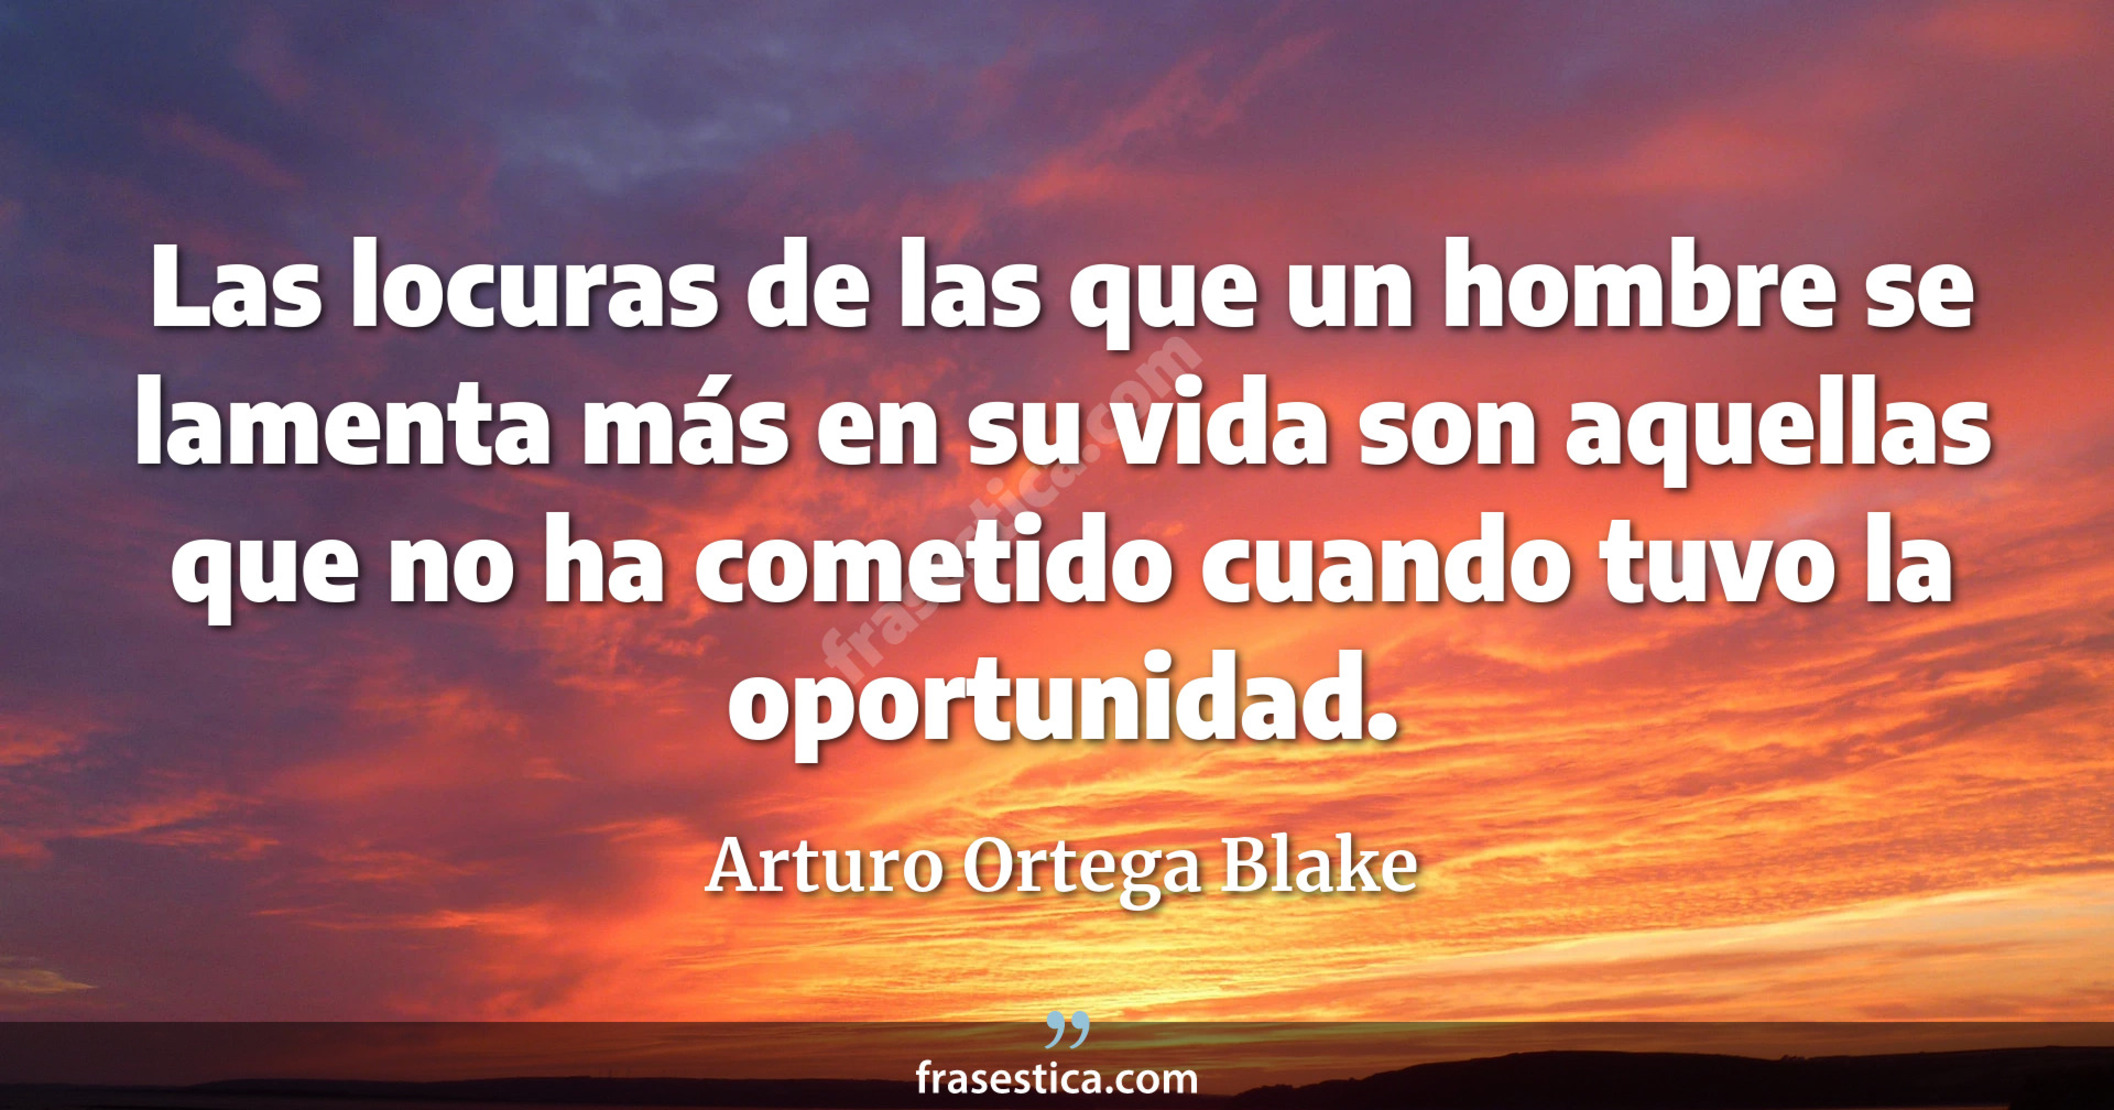 Las locuras de las que un hombre se lamenta más en su vida son aquellas que no ha cometido cuando tuvo la oportunidad. - Arturo Ortega Blake